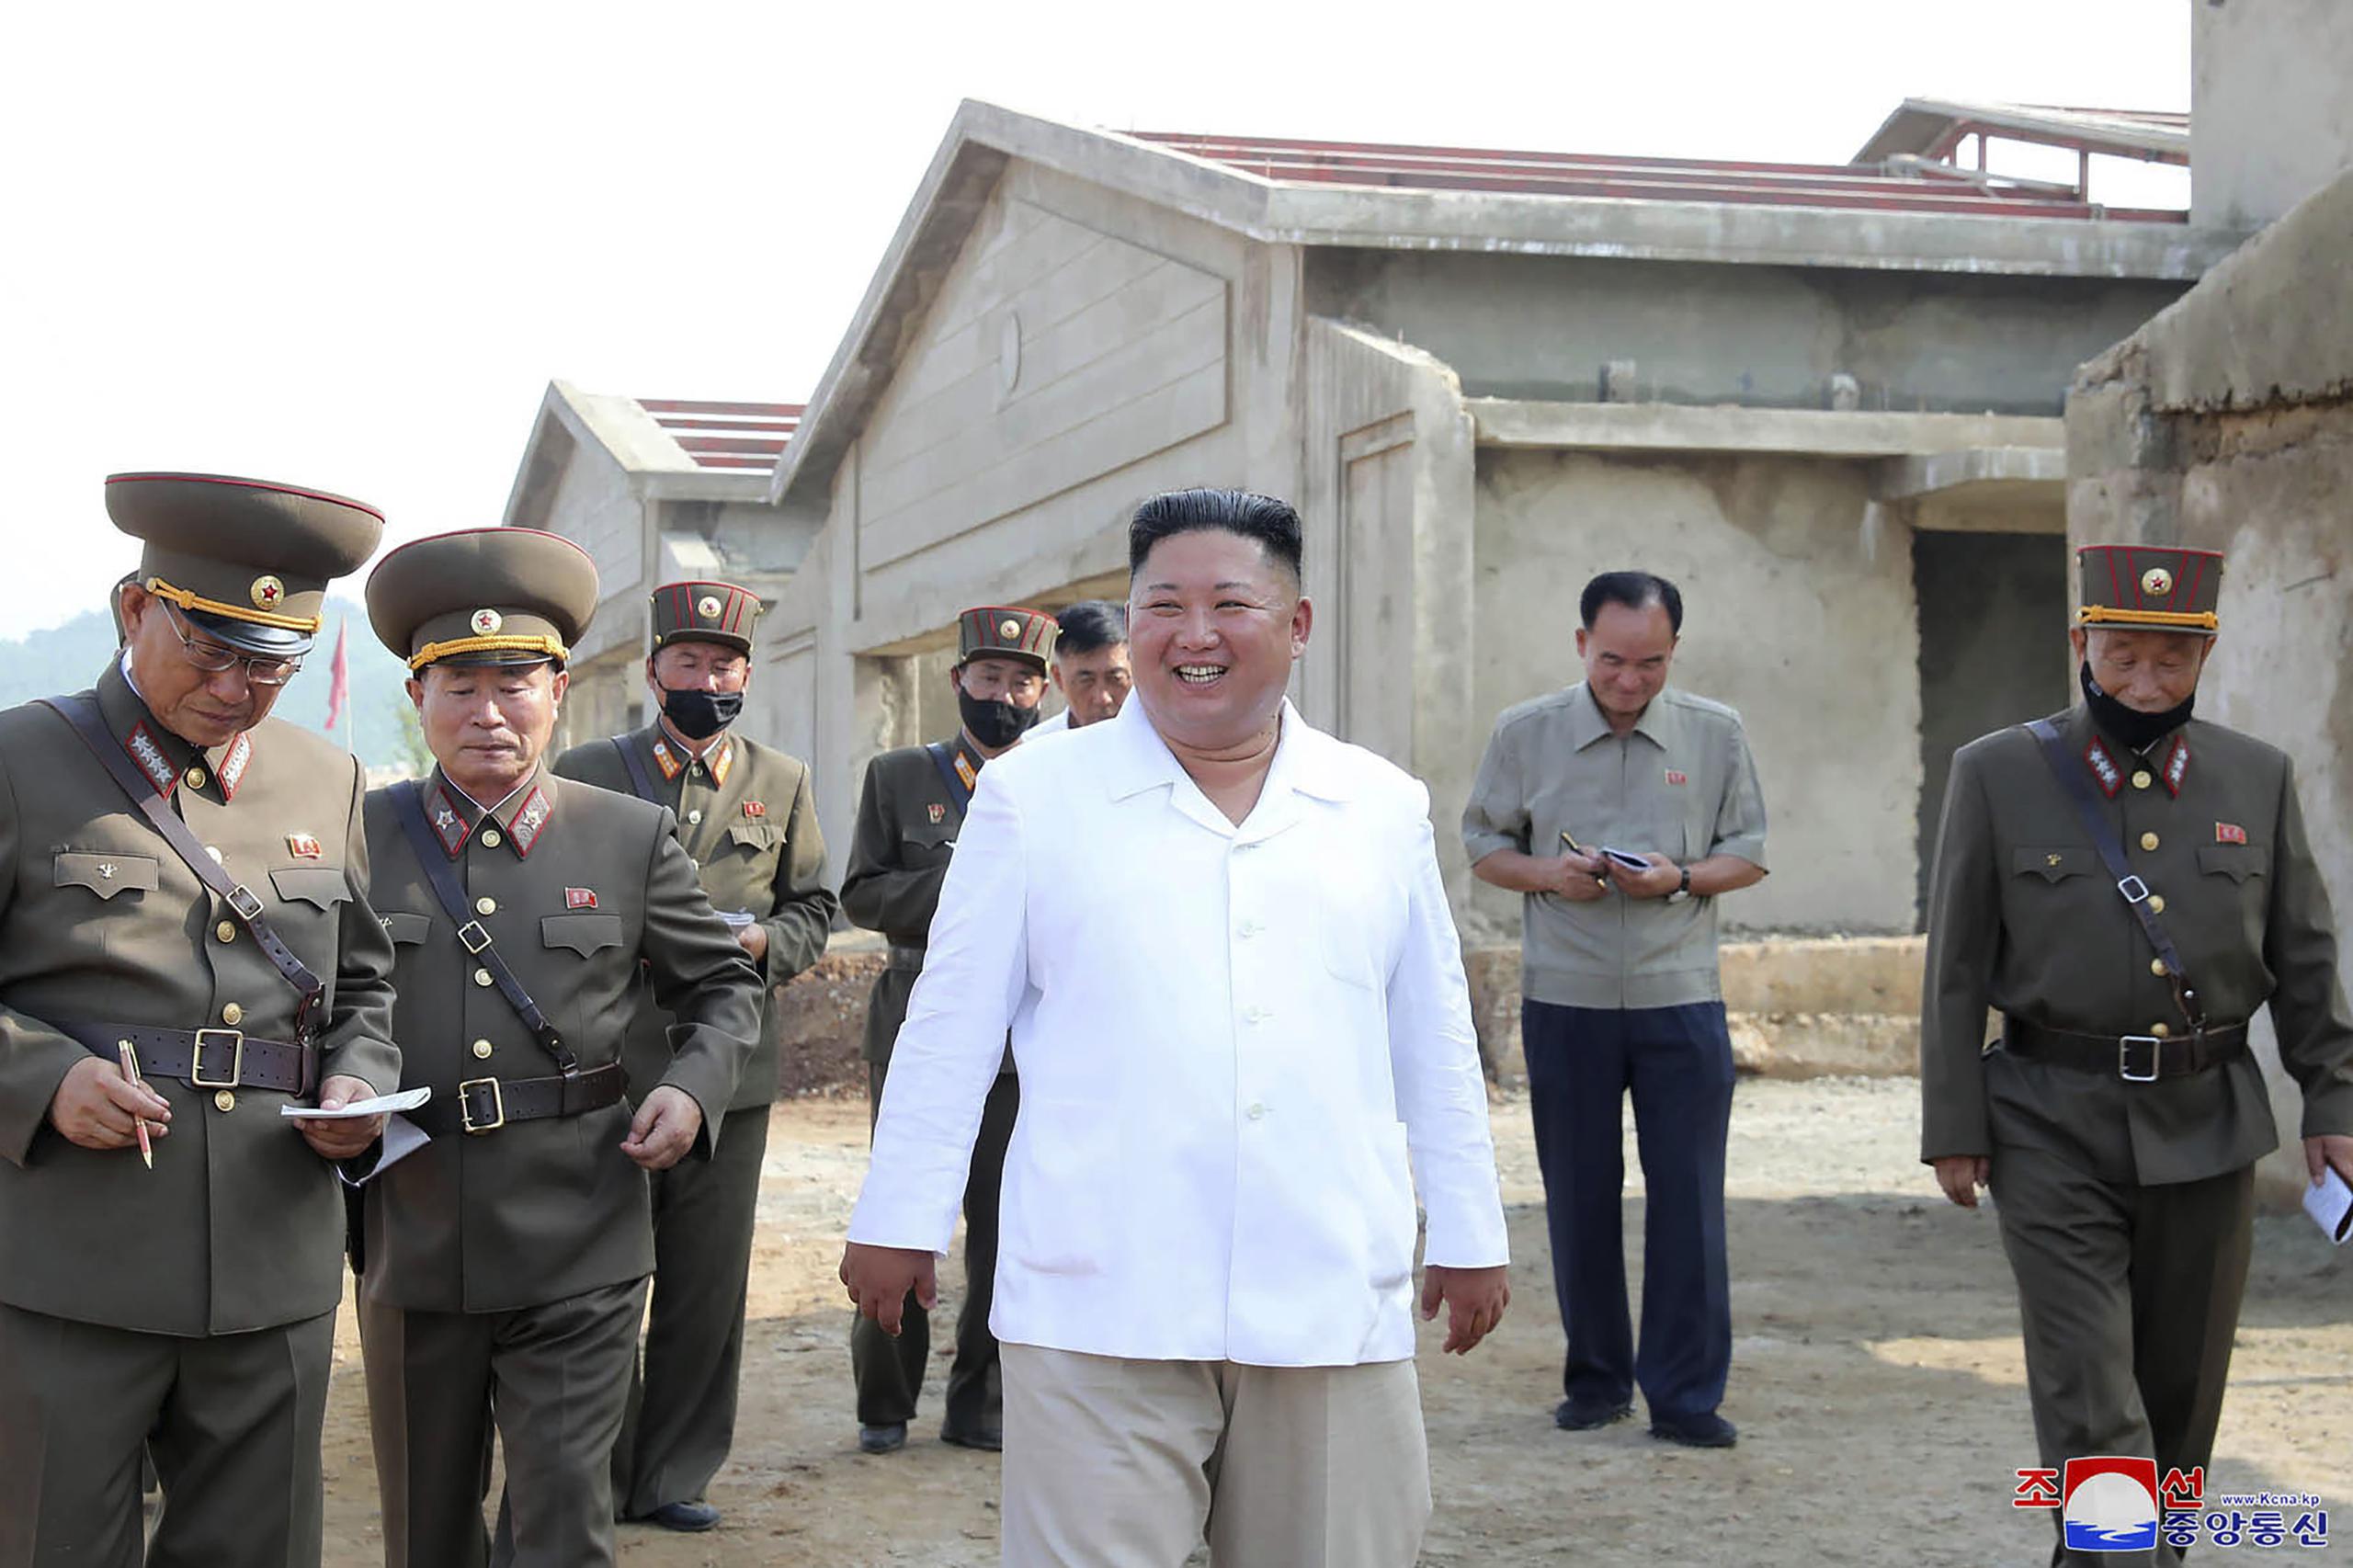 El gobernante norcoreano Kim Jong Un, al centro, visita una nueva granja avícola en el distrito Hwangju, Corea del Norte